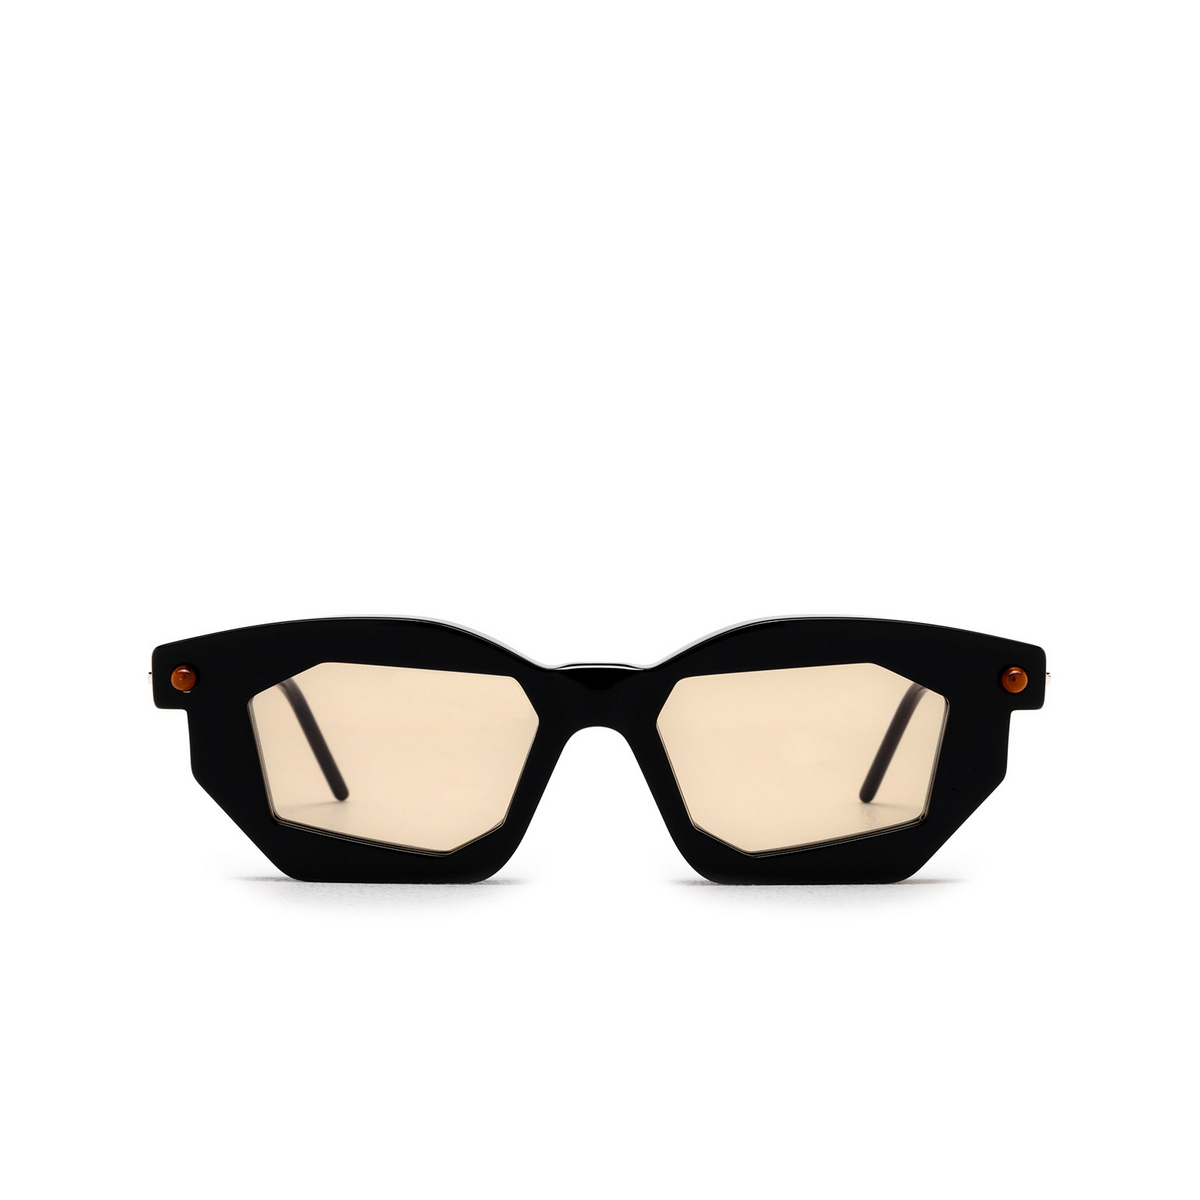 Kuboraum P14 Sunglasses BS Black Shine & Cream - front view